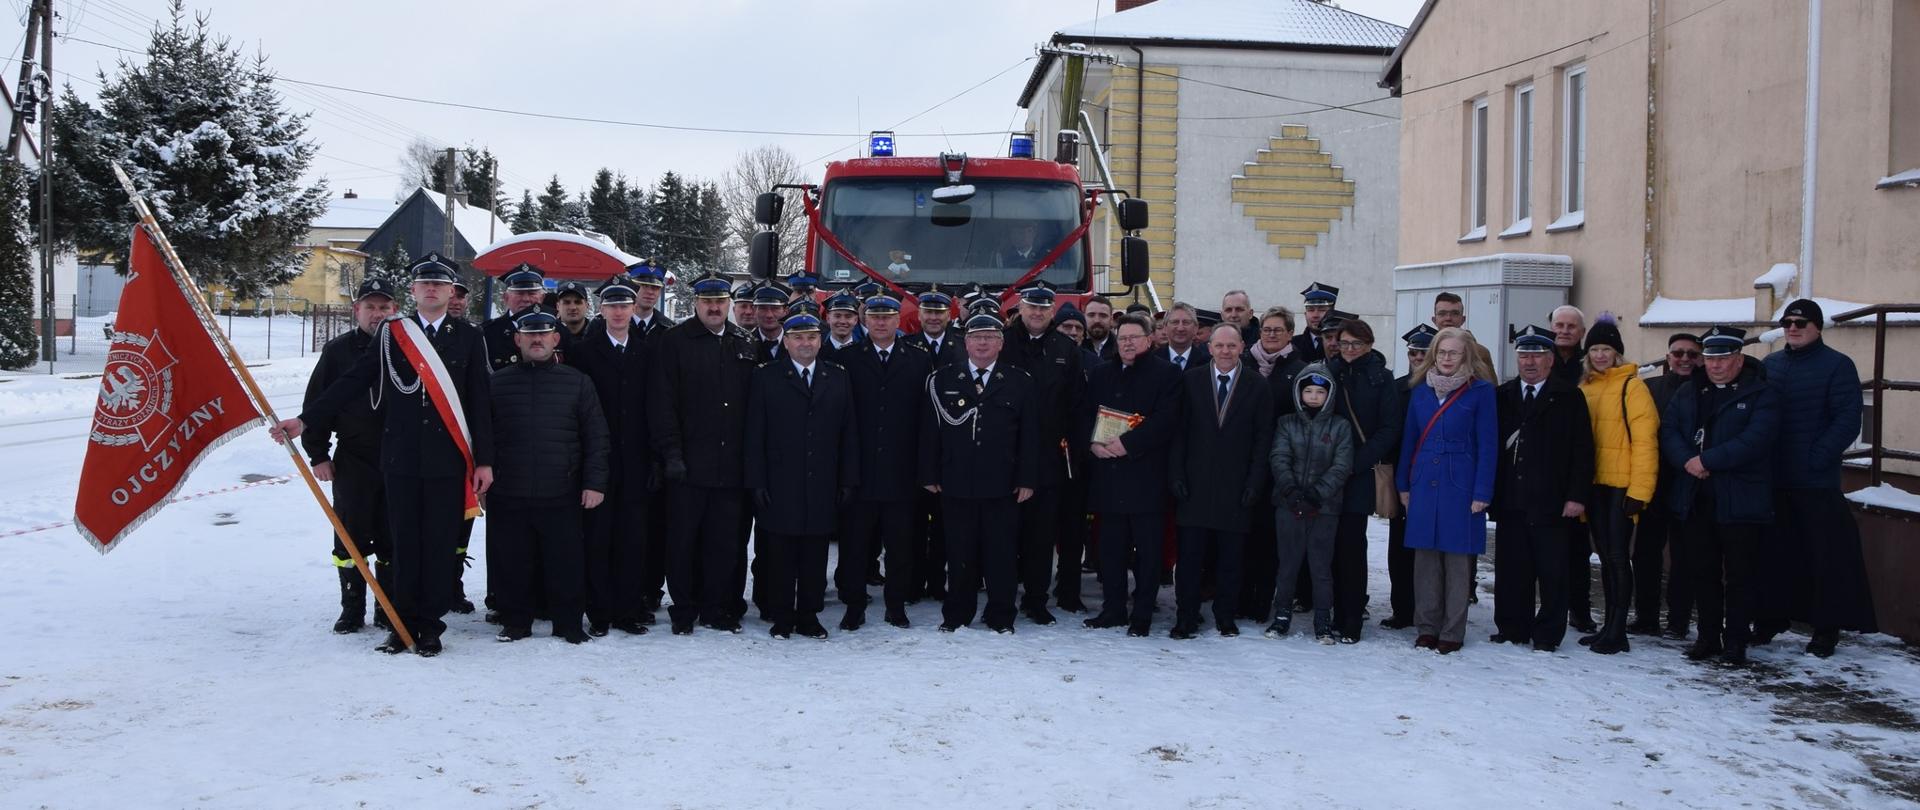 Przed przekazanym samochodem ratowniczo-gaśniczym stoją strażacy i goście - uczestniczy uroczystej zbiórki w miejscowości Dulsk.